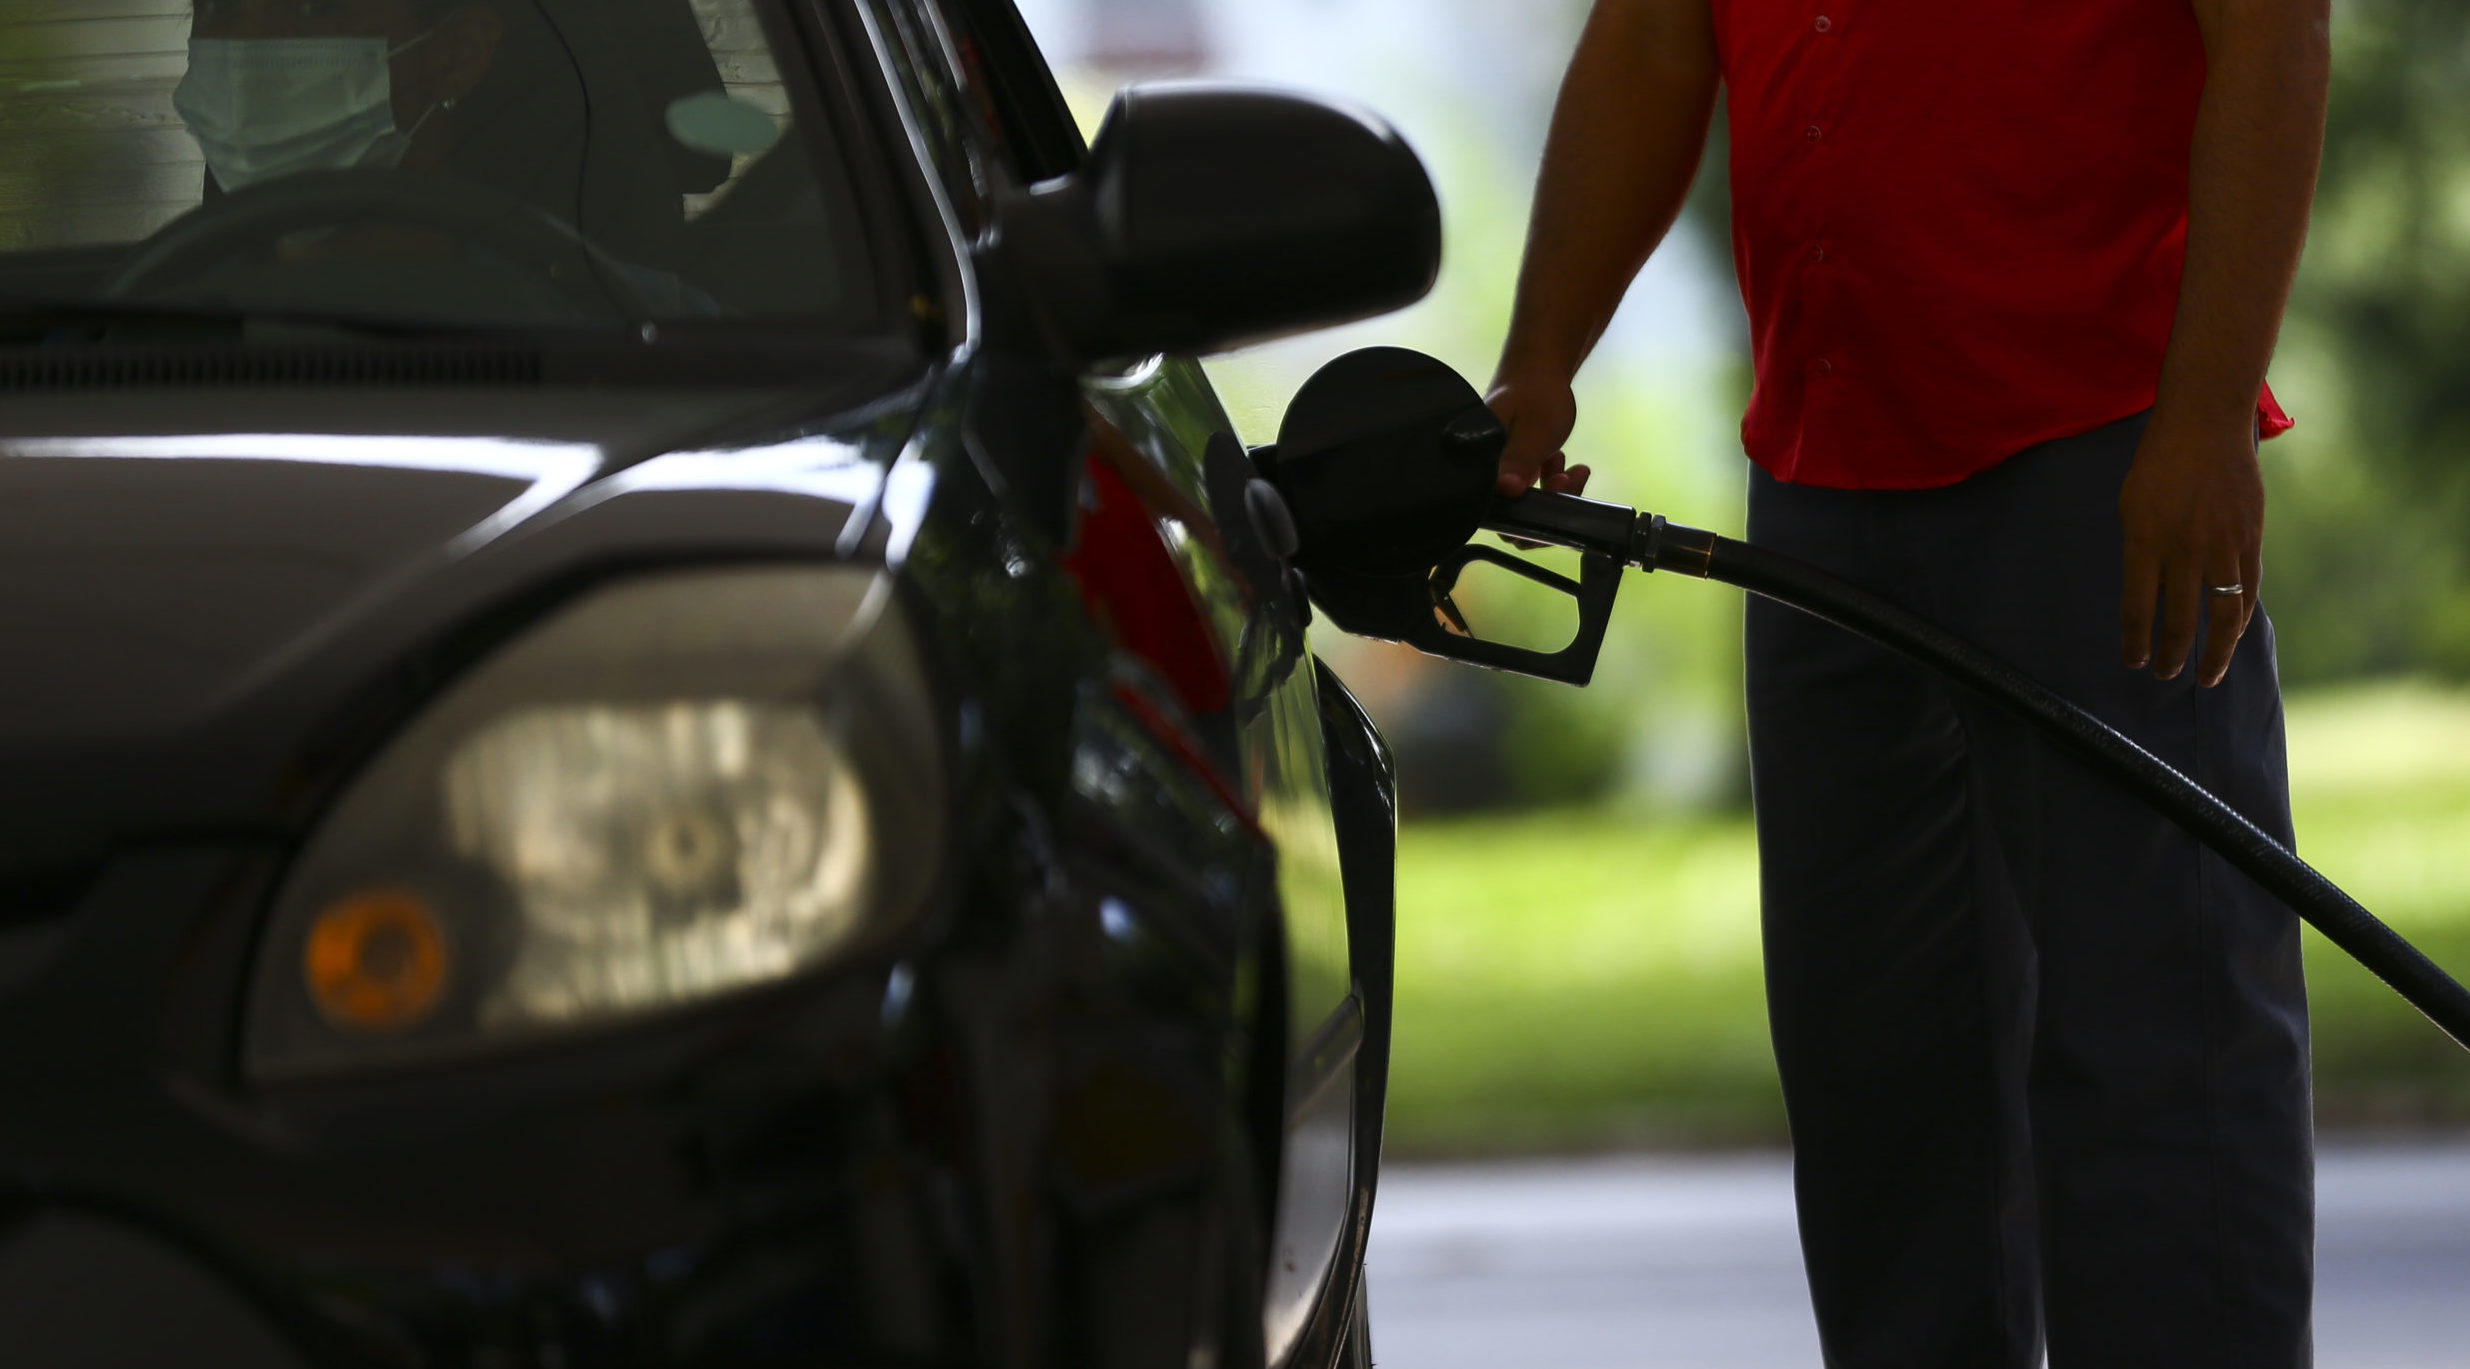 Gasolina cara pesa mais no bolso do brasileiro, diz Oxford Economics. Na imagem: abastecimento em posto de combustíveis (Foto: Marcelo Camargo/Agência Brasil)